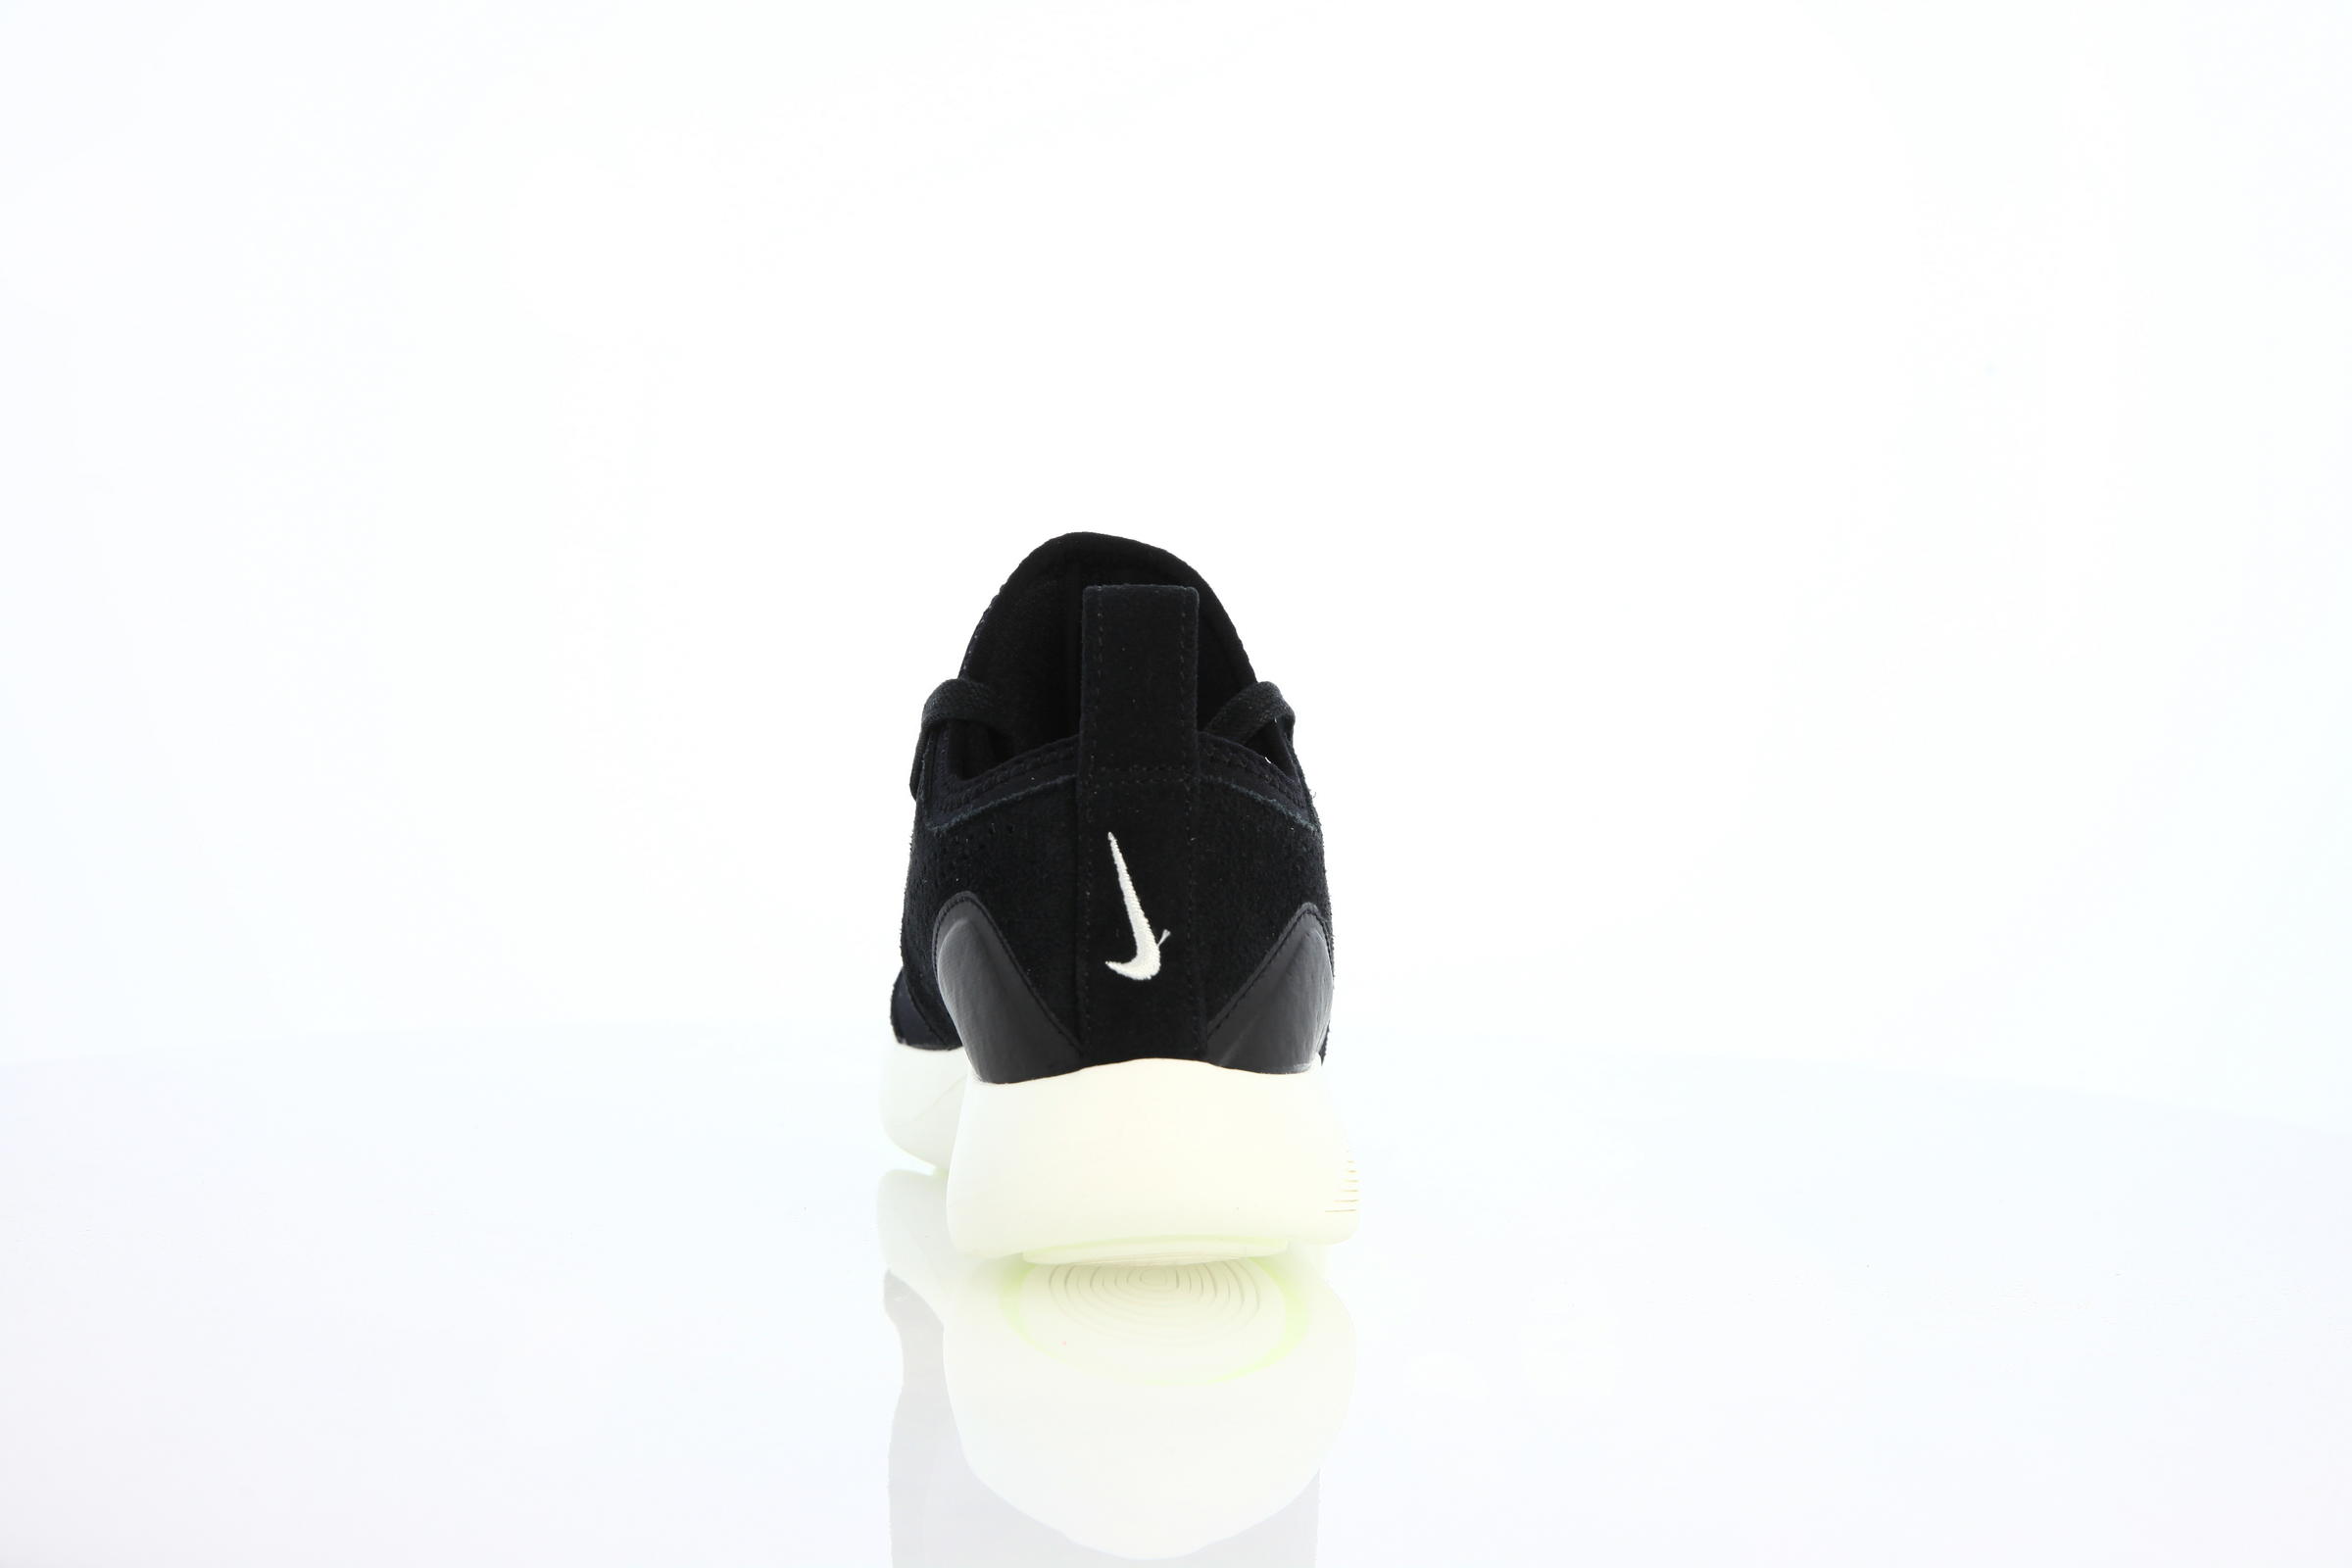 Nike Wmns Lunarcharge Premium "Black"